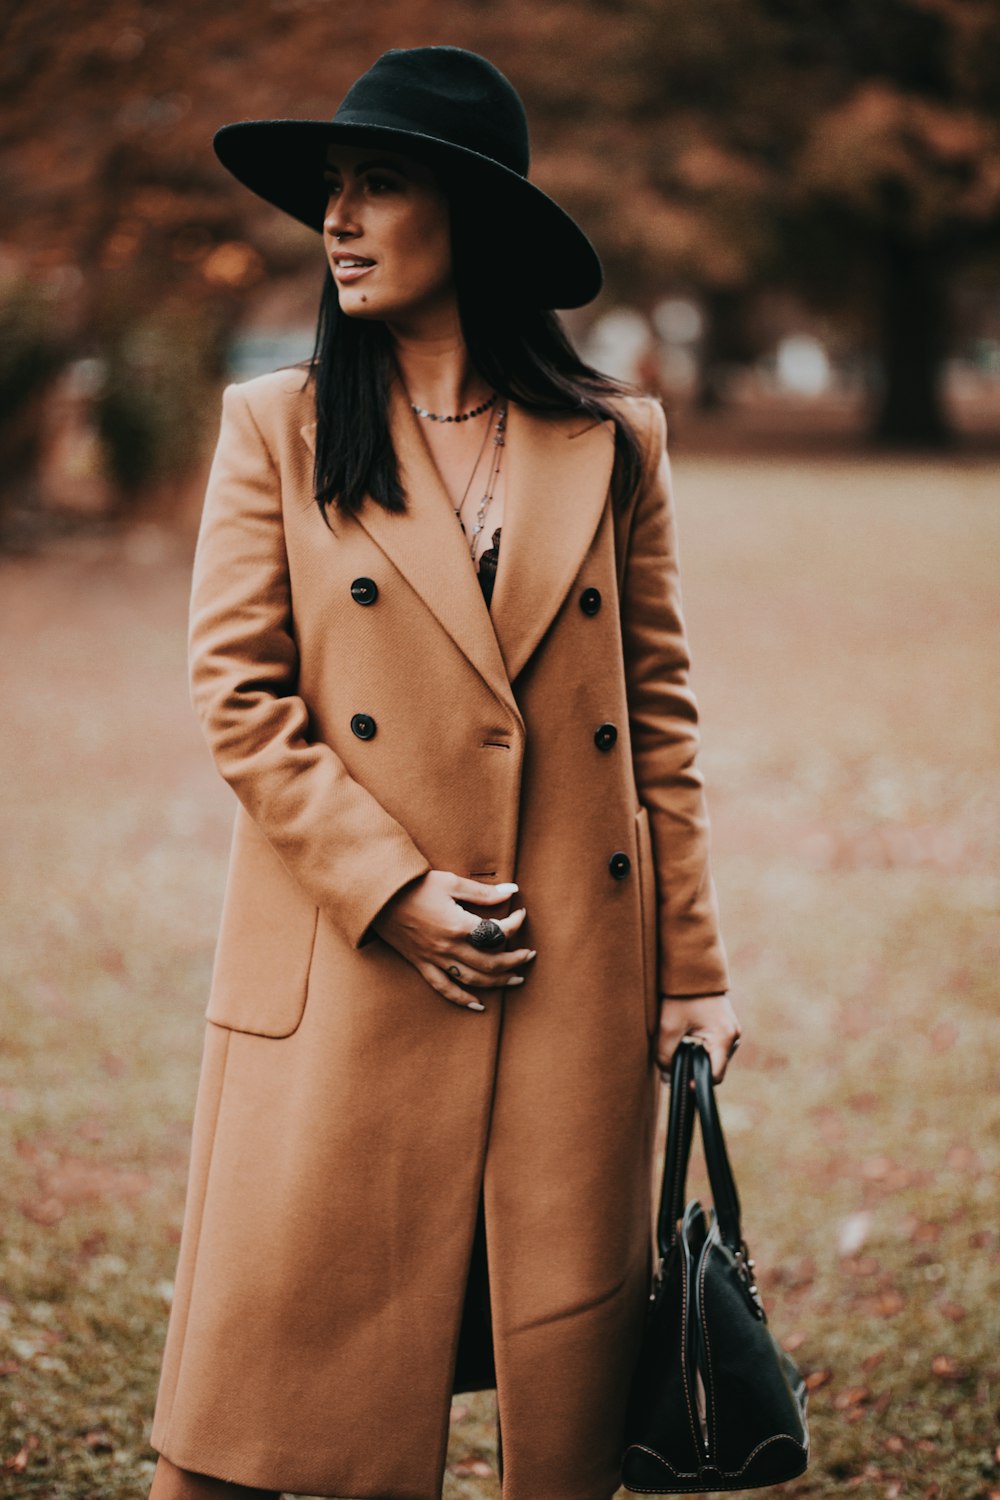 낮 동안 갈색 들판에 서 있는 갈색 코트를 입은 여자